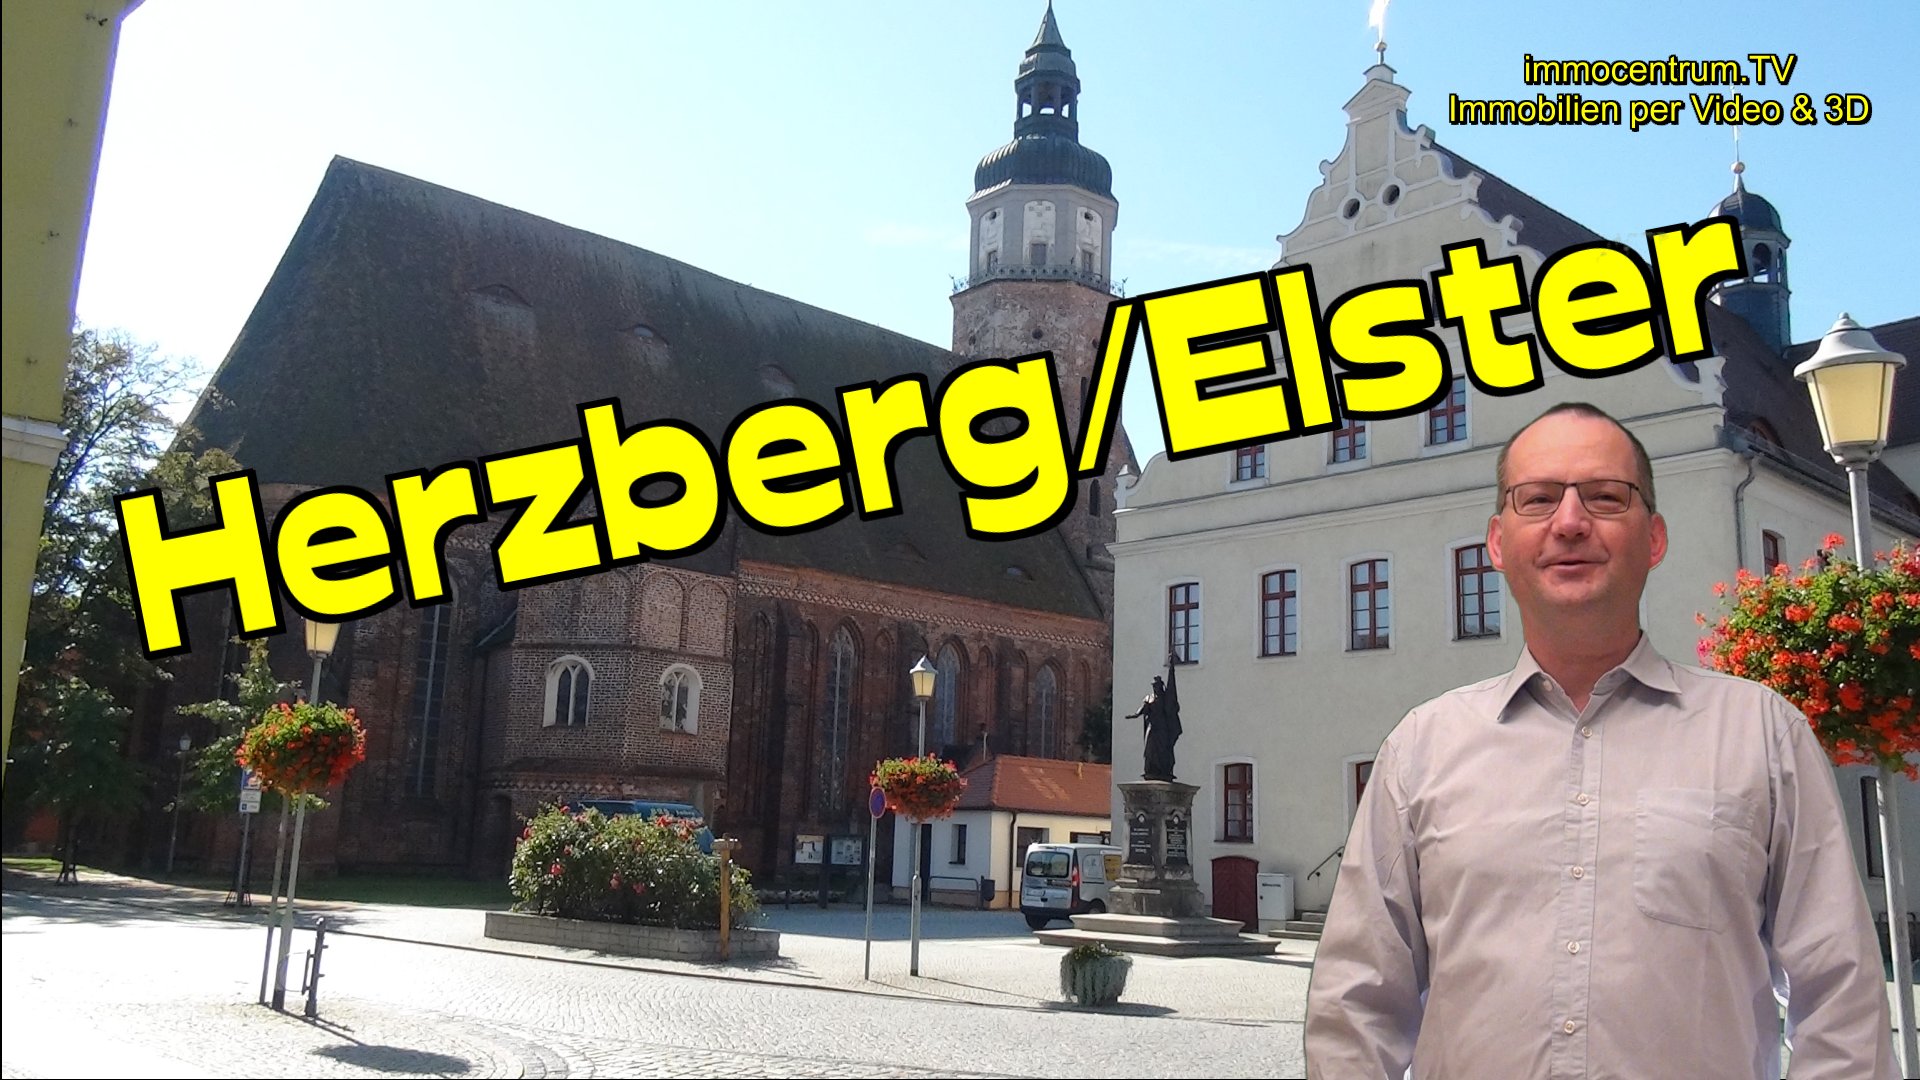 Herzberg Elster